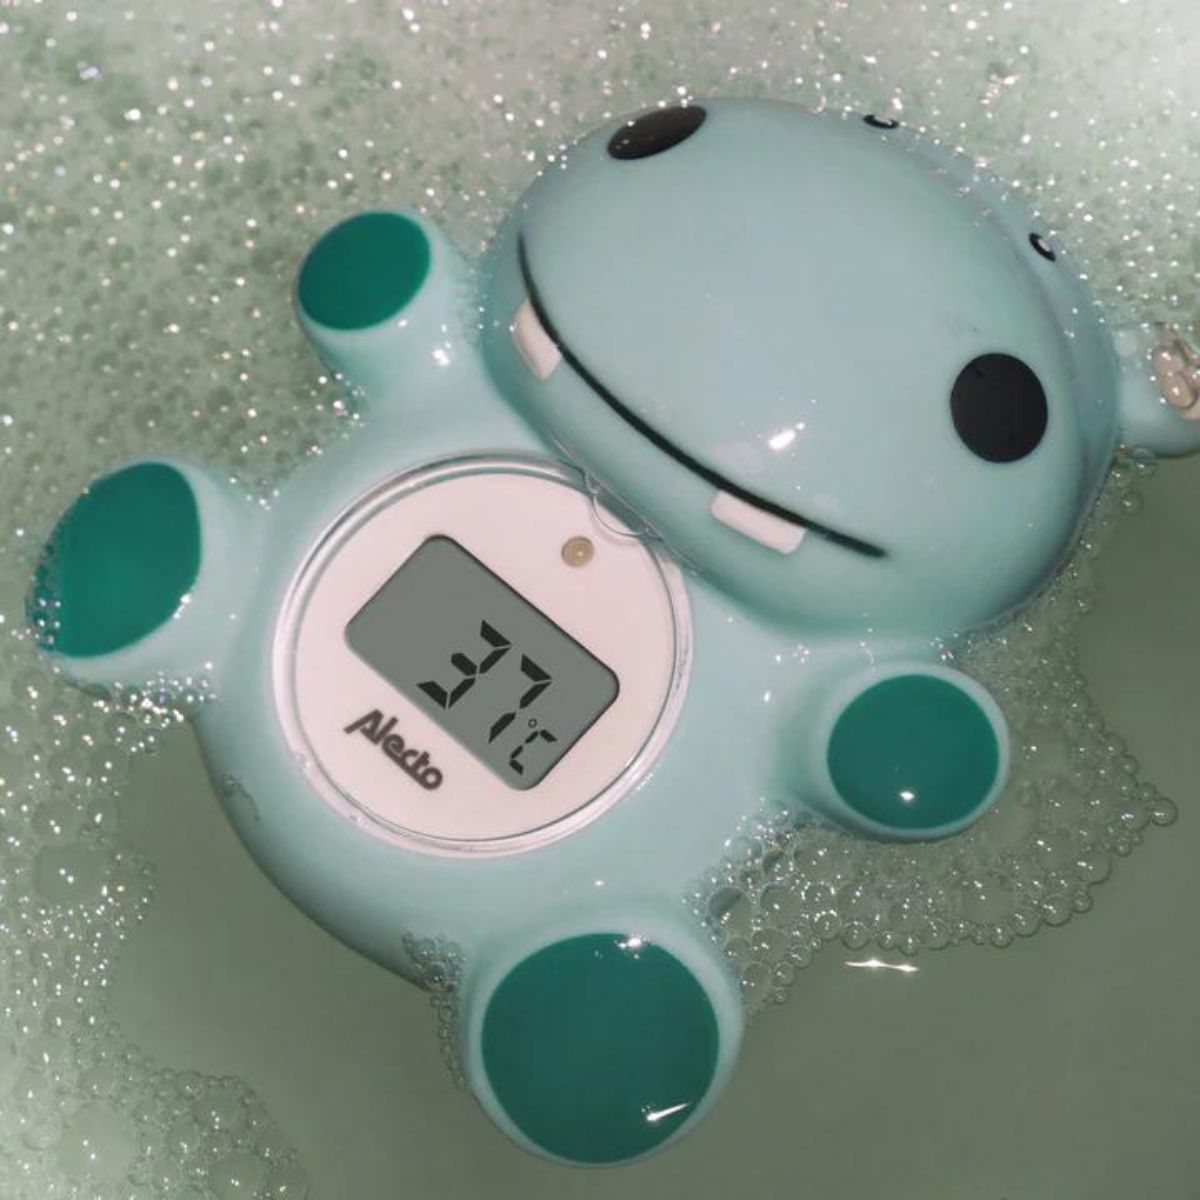 Meet de temperatuur van het badje of de slaapkamer van jouw kindje met de thermometer nijlpaard BC-11 van Alecto. Nauwkeurige meting met een meetbereik van 0-50 graden. Bij hoger dan 39 graden gaat het alarm af. VanZus